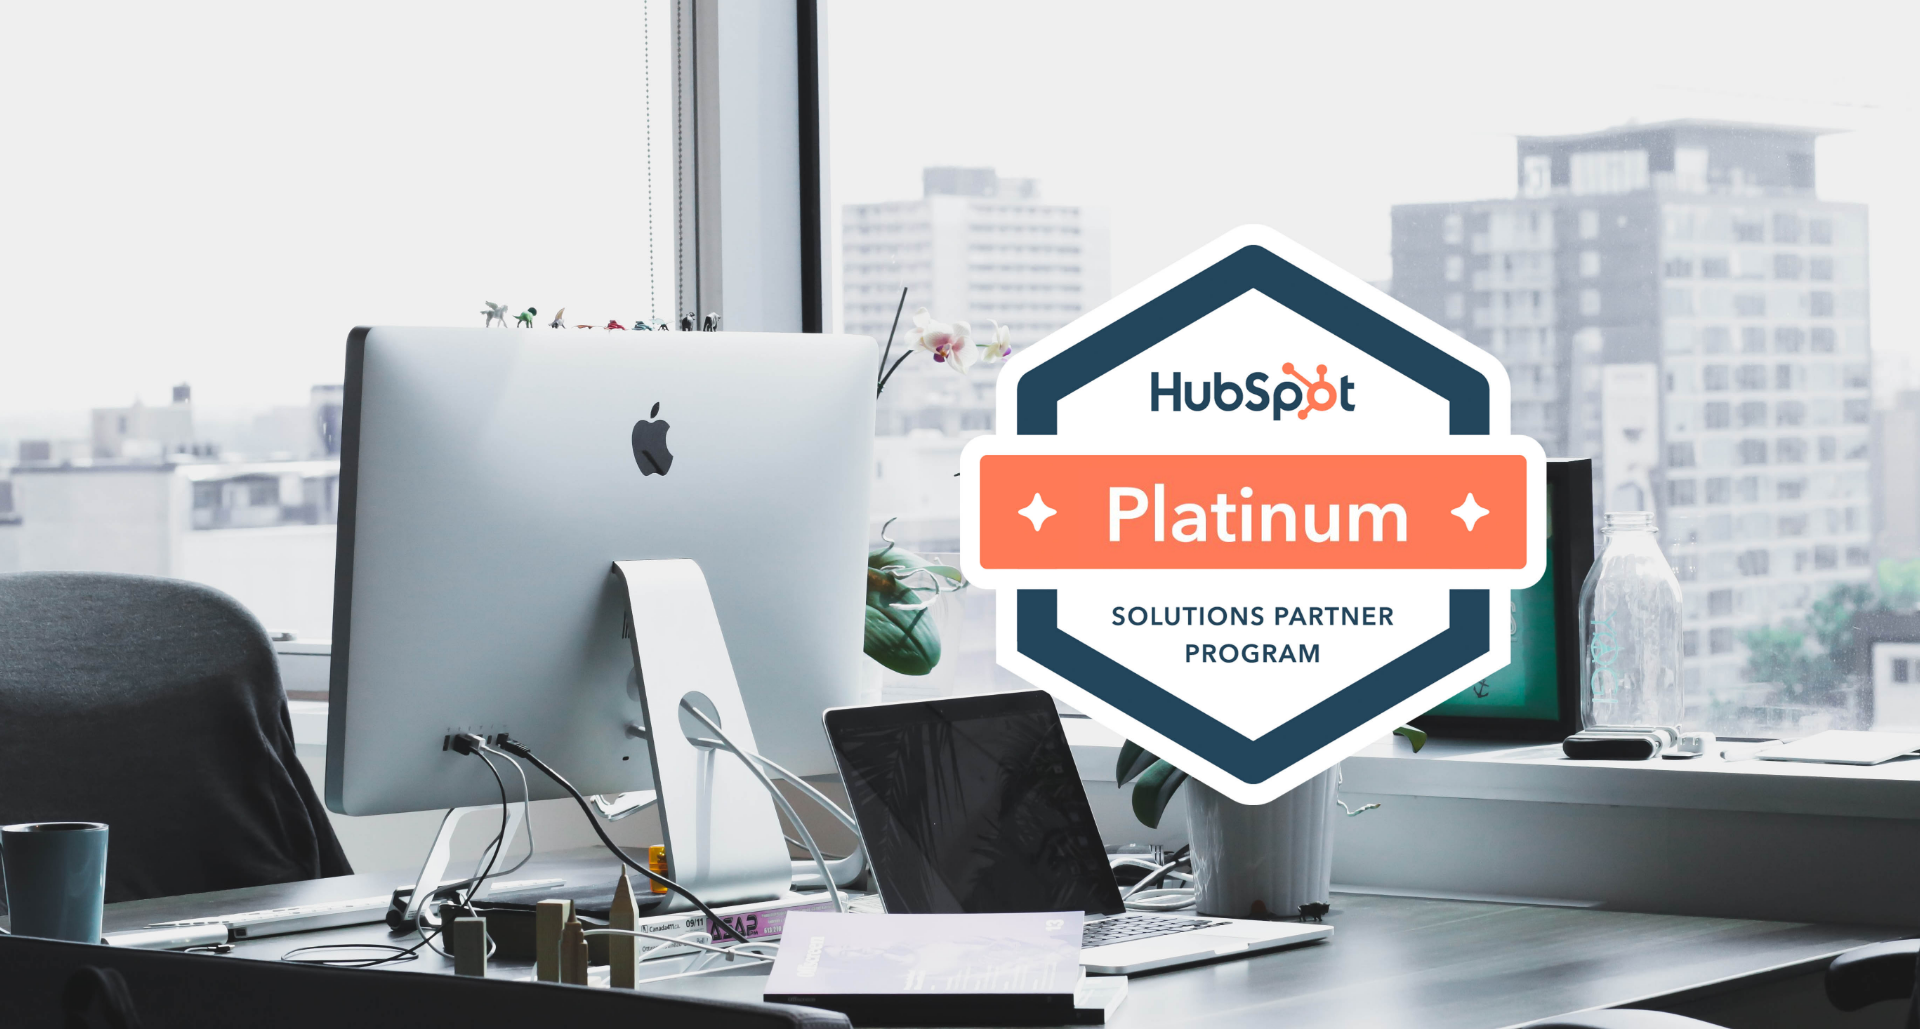 hubspot platinum partner in Spain